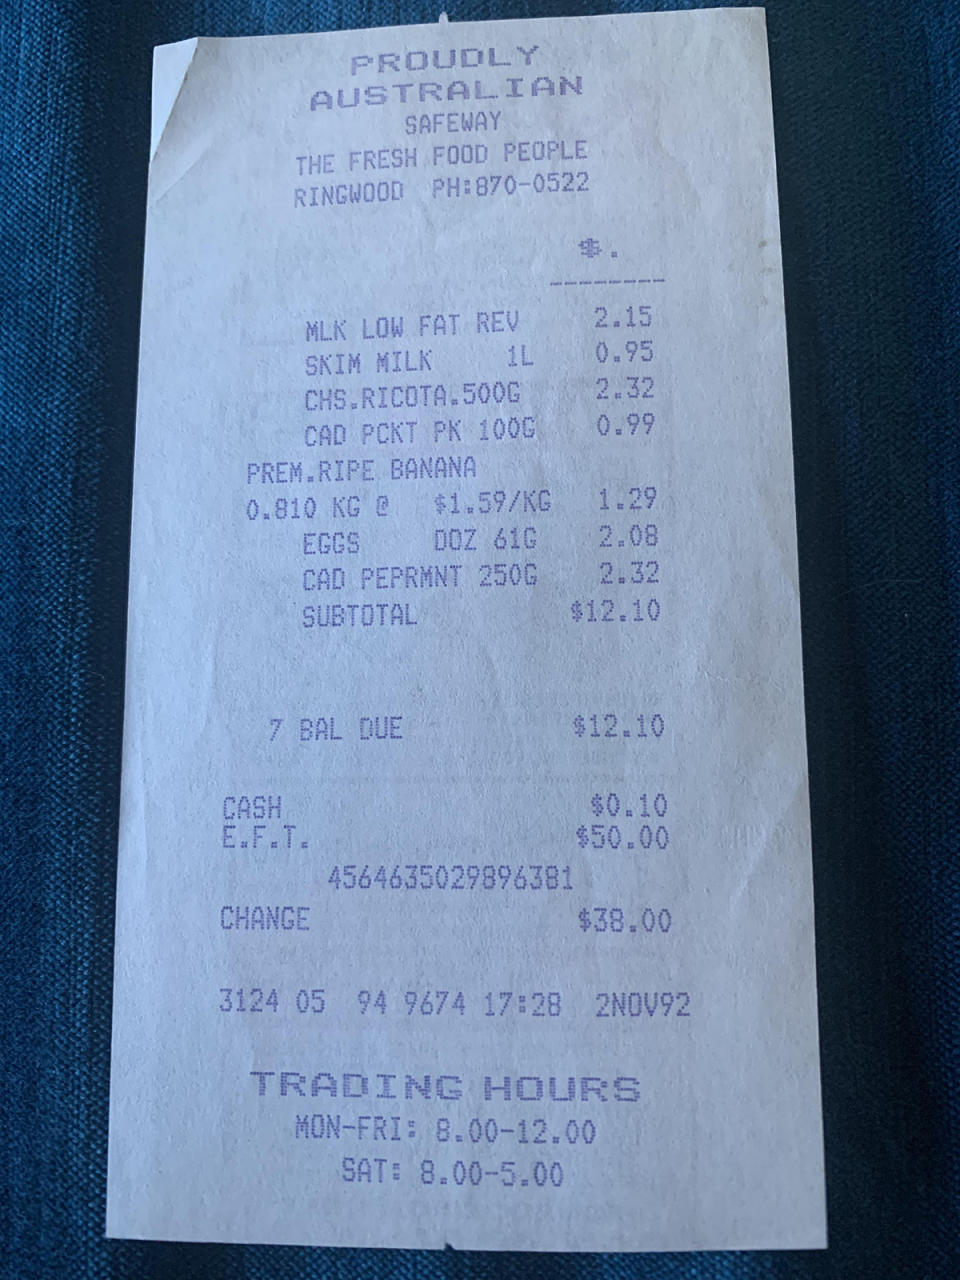 Safeway supermarket receipt dated 2 November 1992